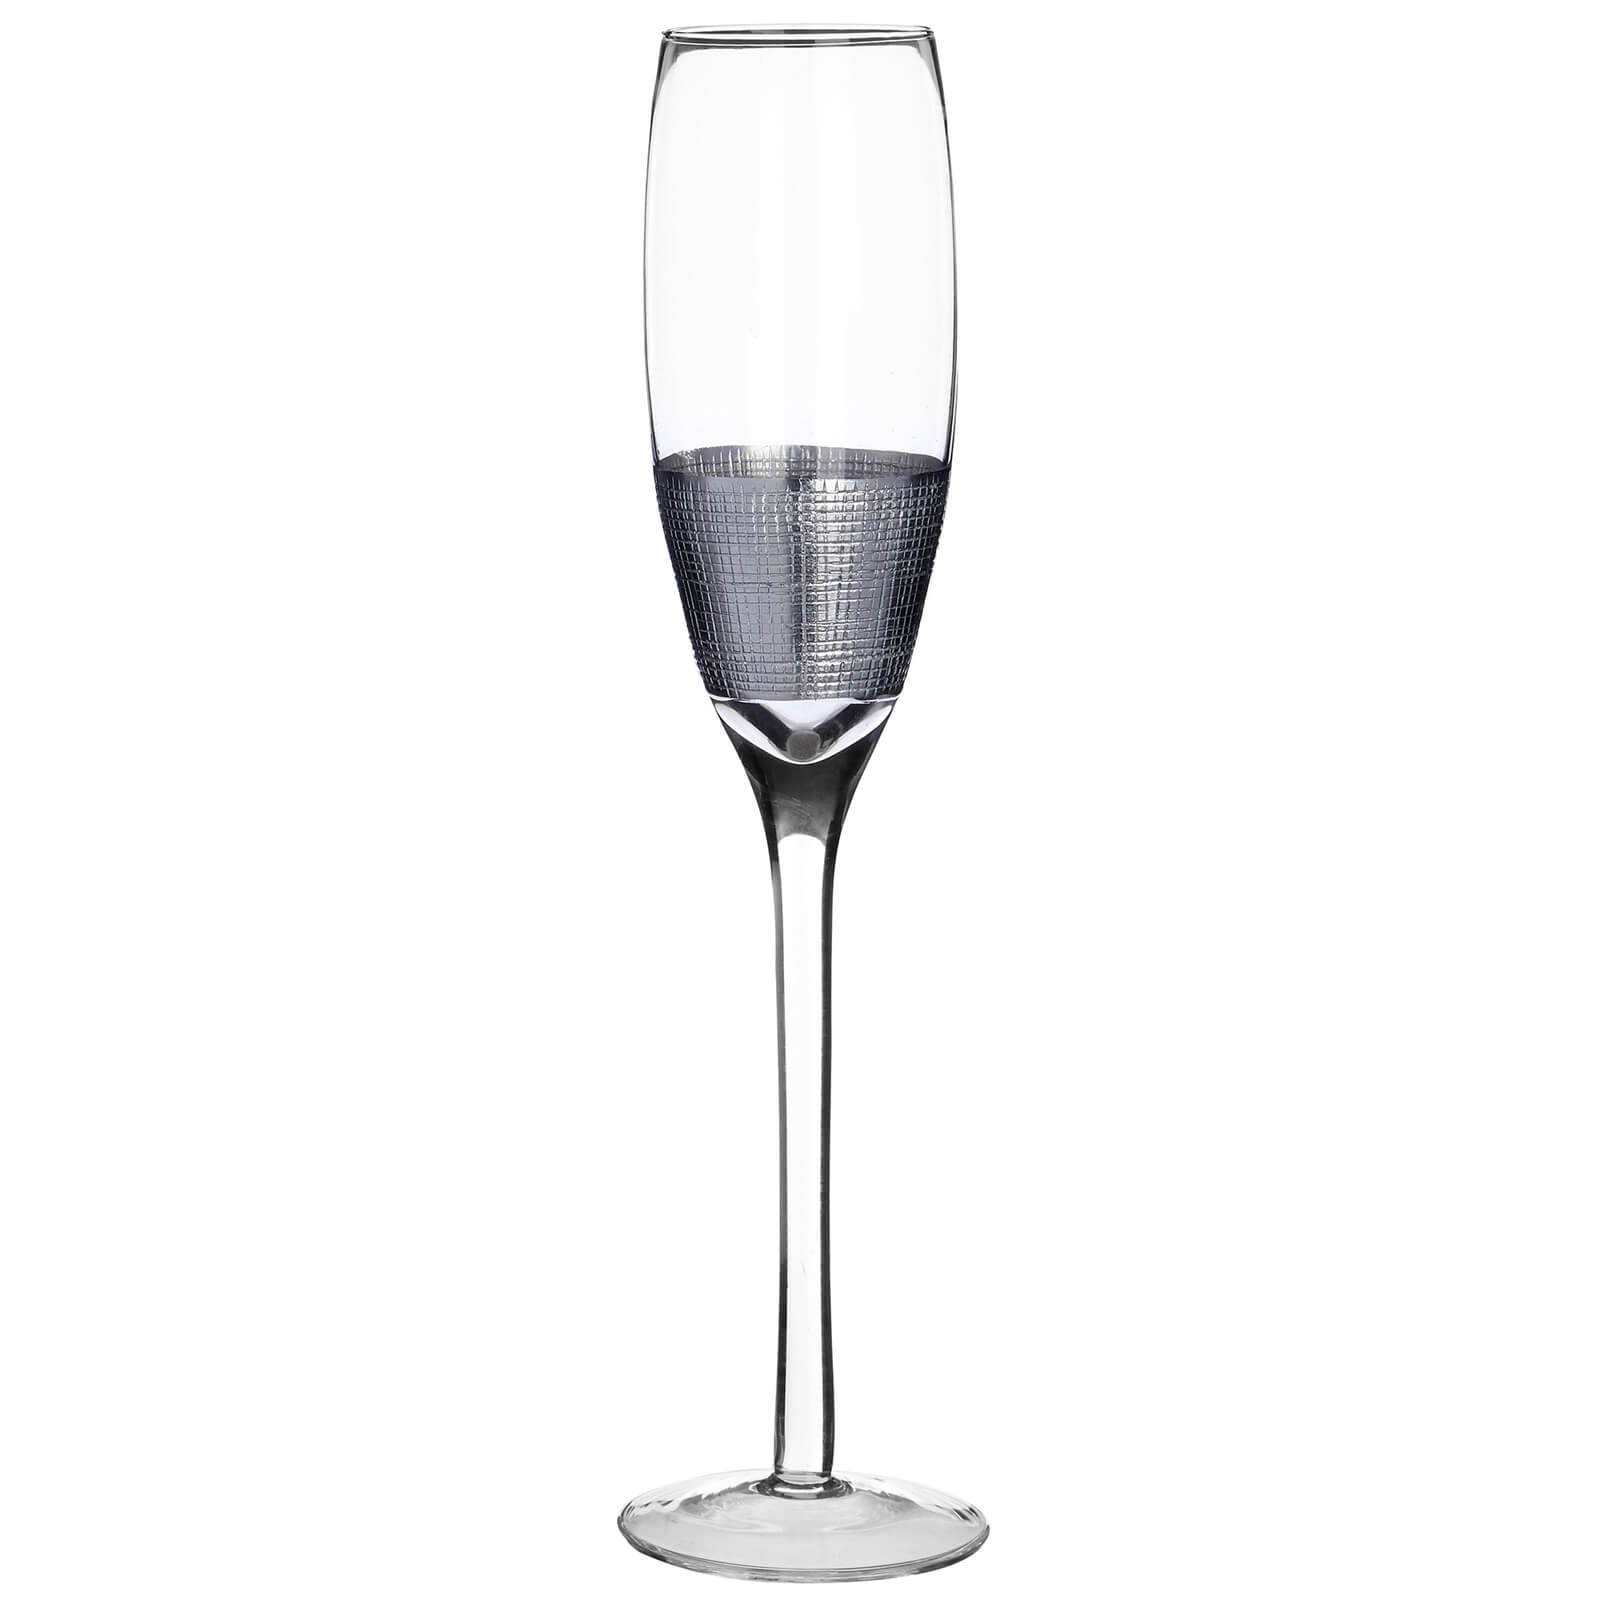 Apollo Champagne Glasses - Set of 4